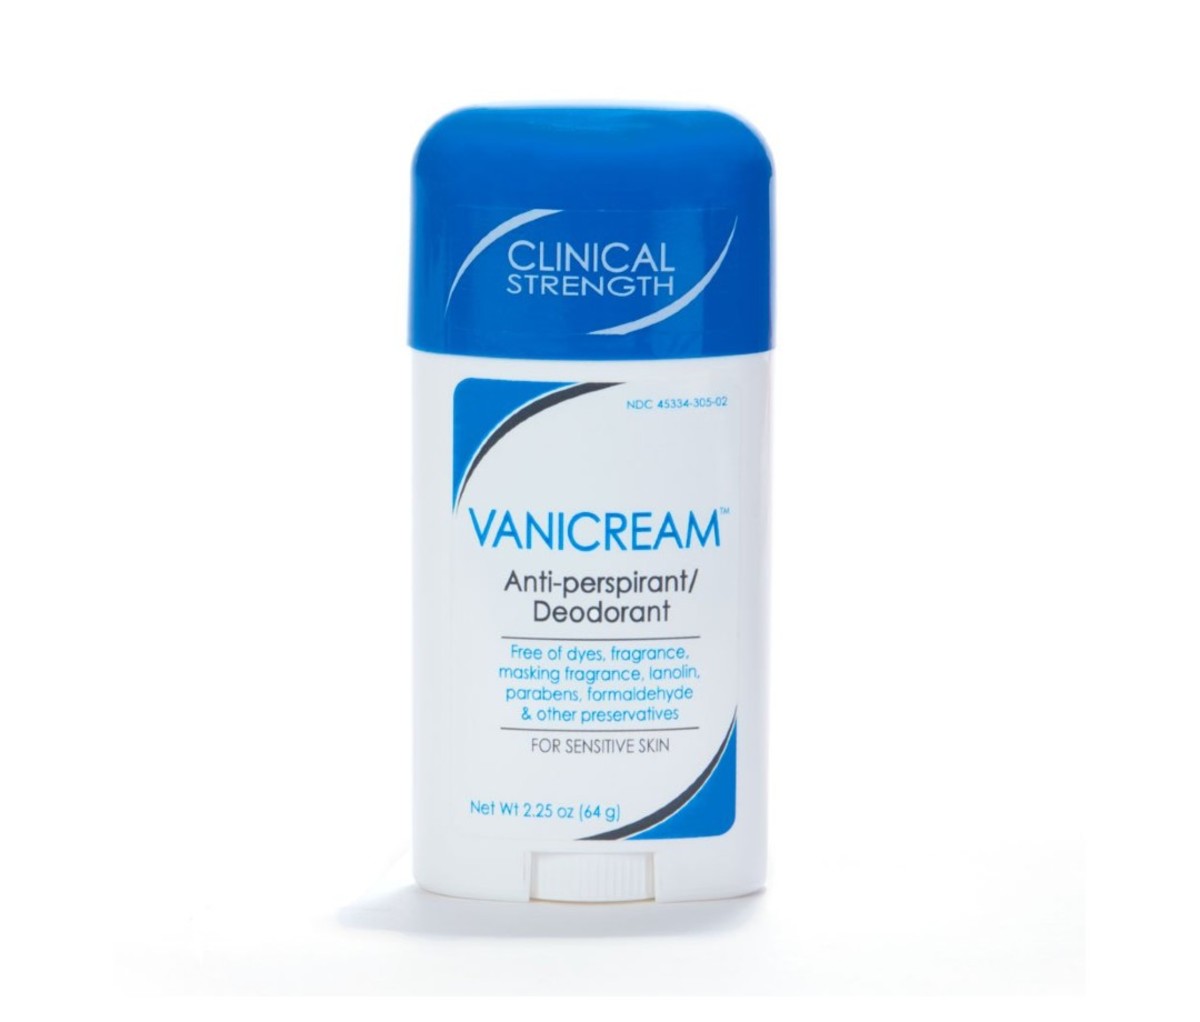 Vanicream Anti-Perspirant Deodorant